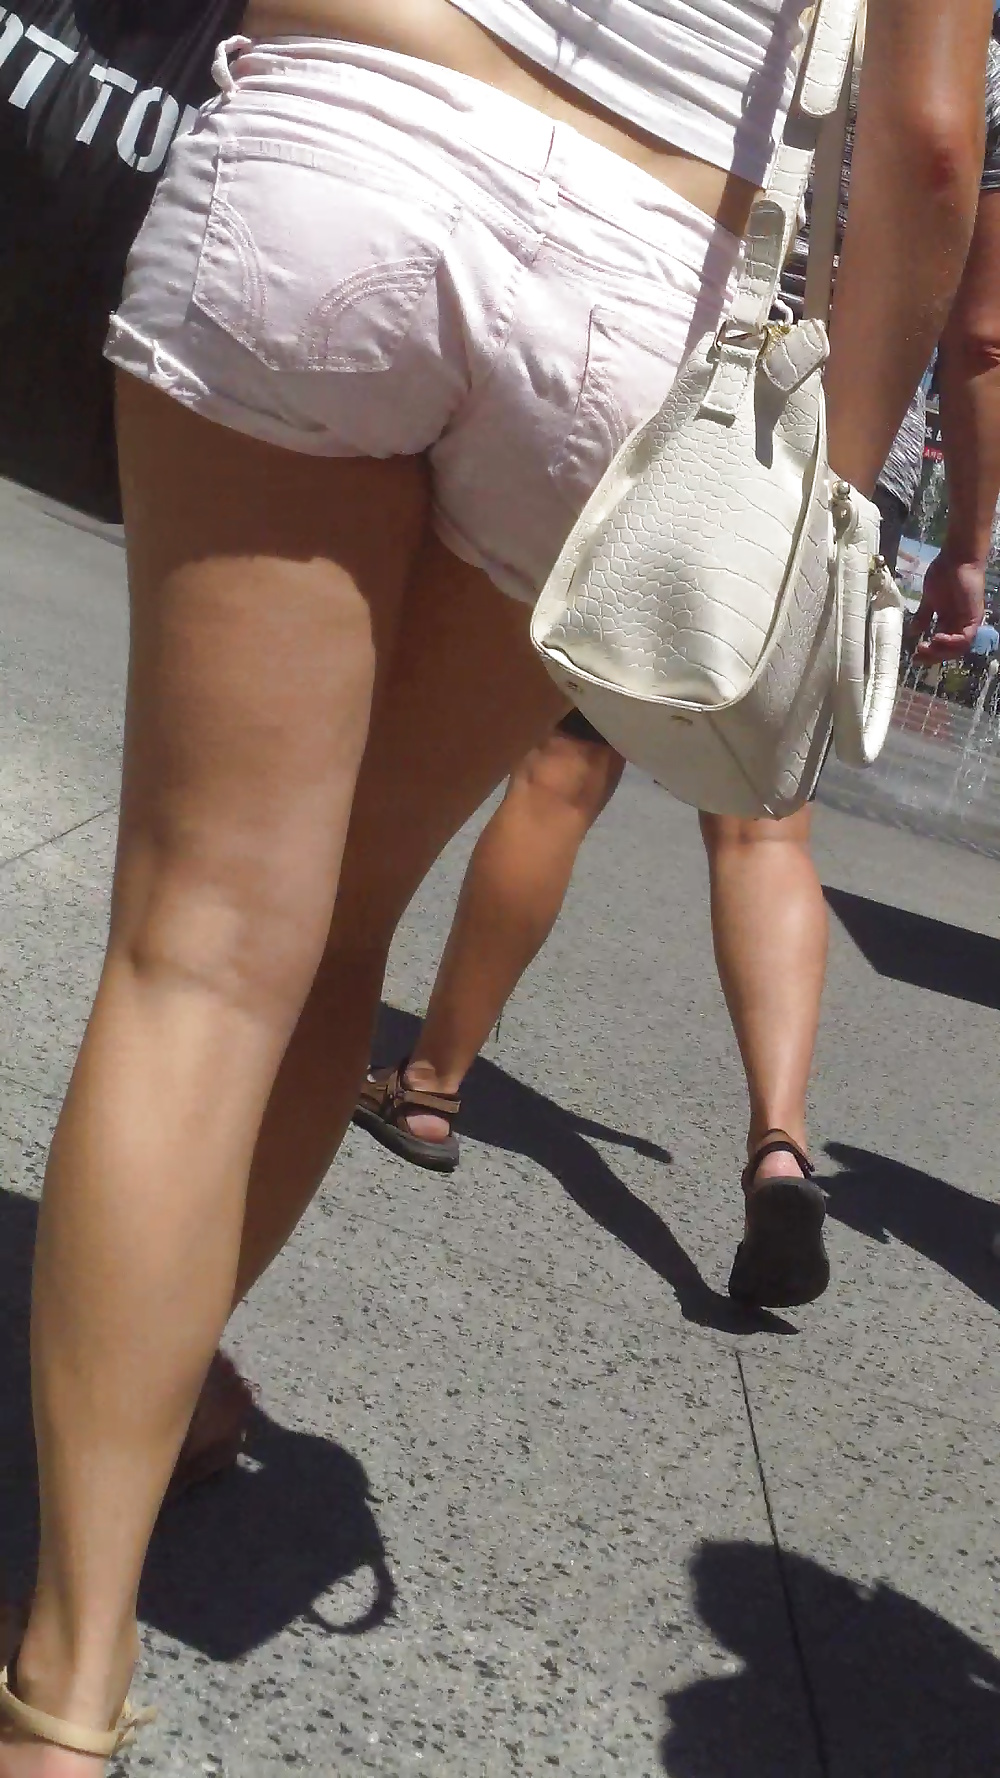 Popular teen girls ass & butt in jeans Part 5 #28733283